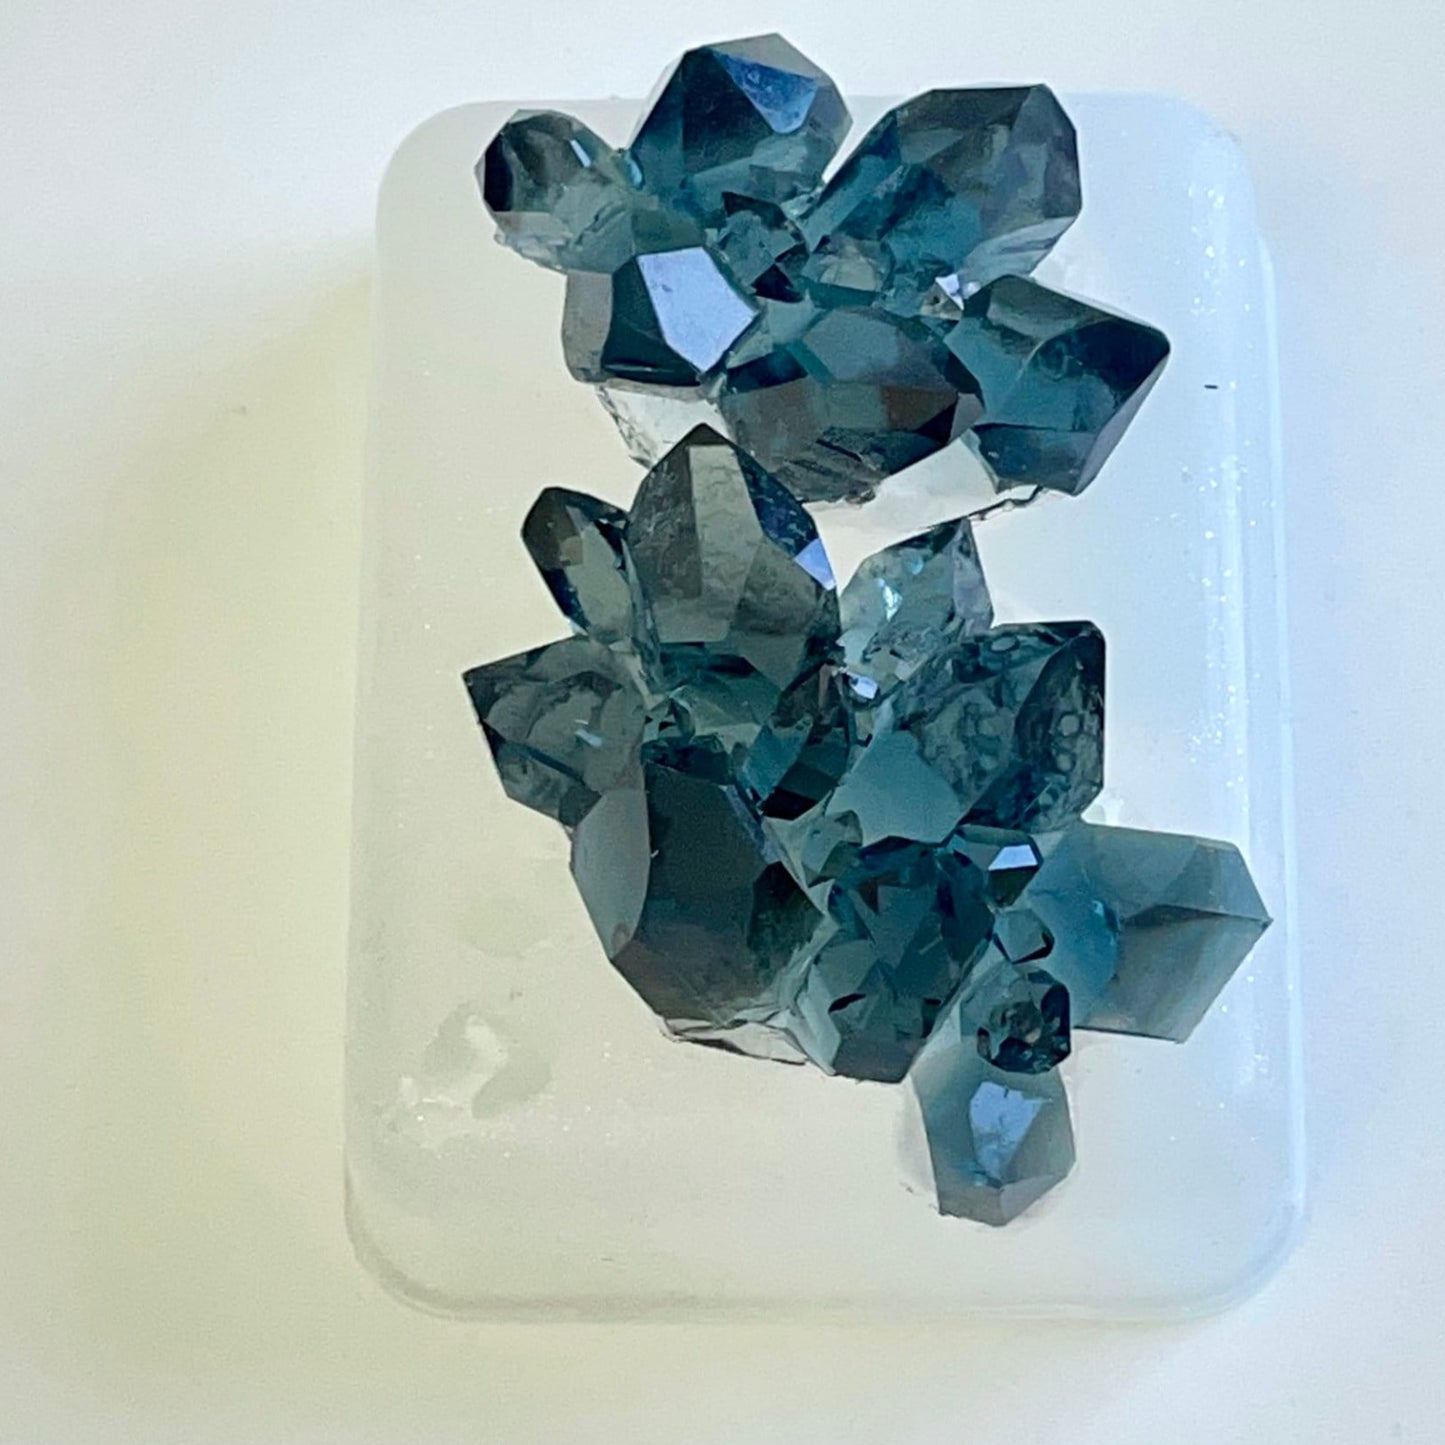 Bezaubernde Mini-Kristall-Cluster-Formen: Perfekt detailliert für exquisite Bastelarbeiten